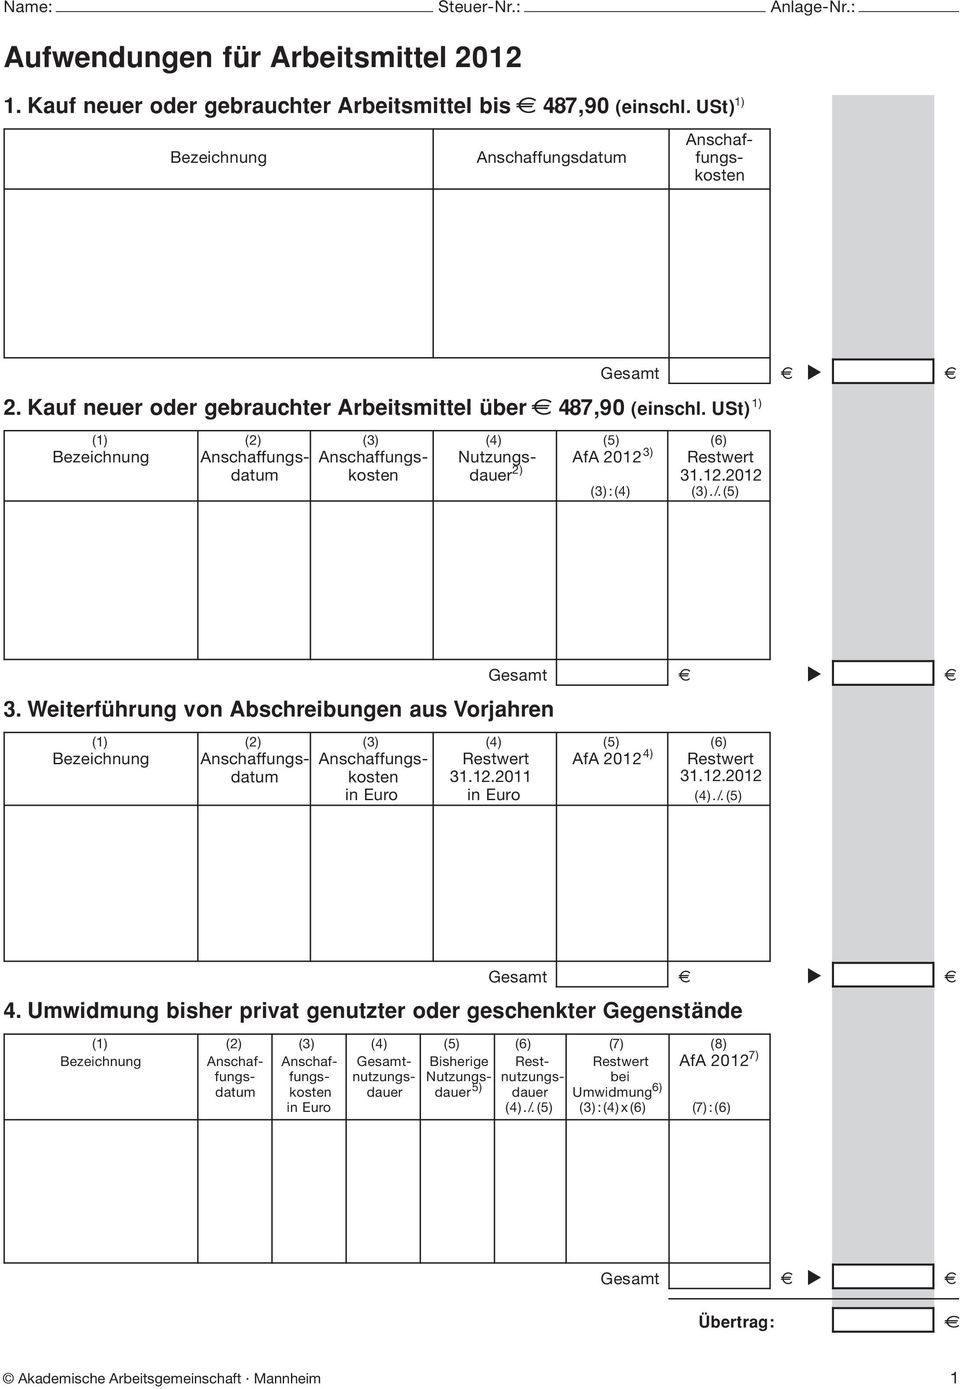 (5) Gsamt 3. Witrführung von Abschribungn aus Vorjahrn ( (2) (3) (4) (5) (6) Bzichnung Anschaffungs- Anschaffungs- Rstwrt 4) AfA 2012 Rstwrt datum kostn in Euro 31.12.2011 in Euro 31.12.2012 (4)./.